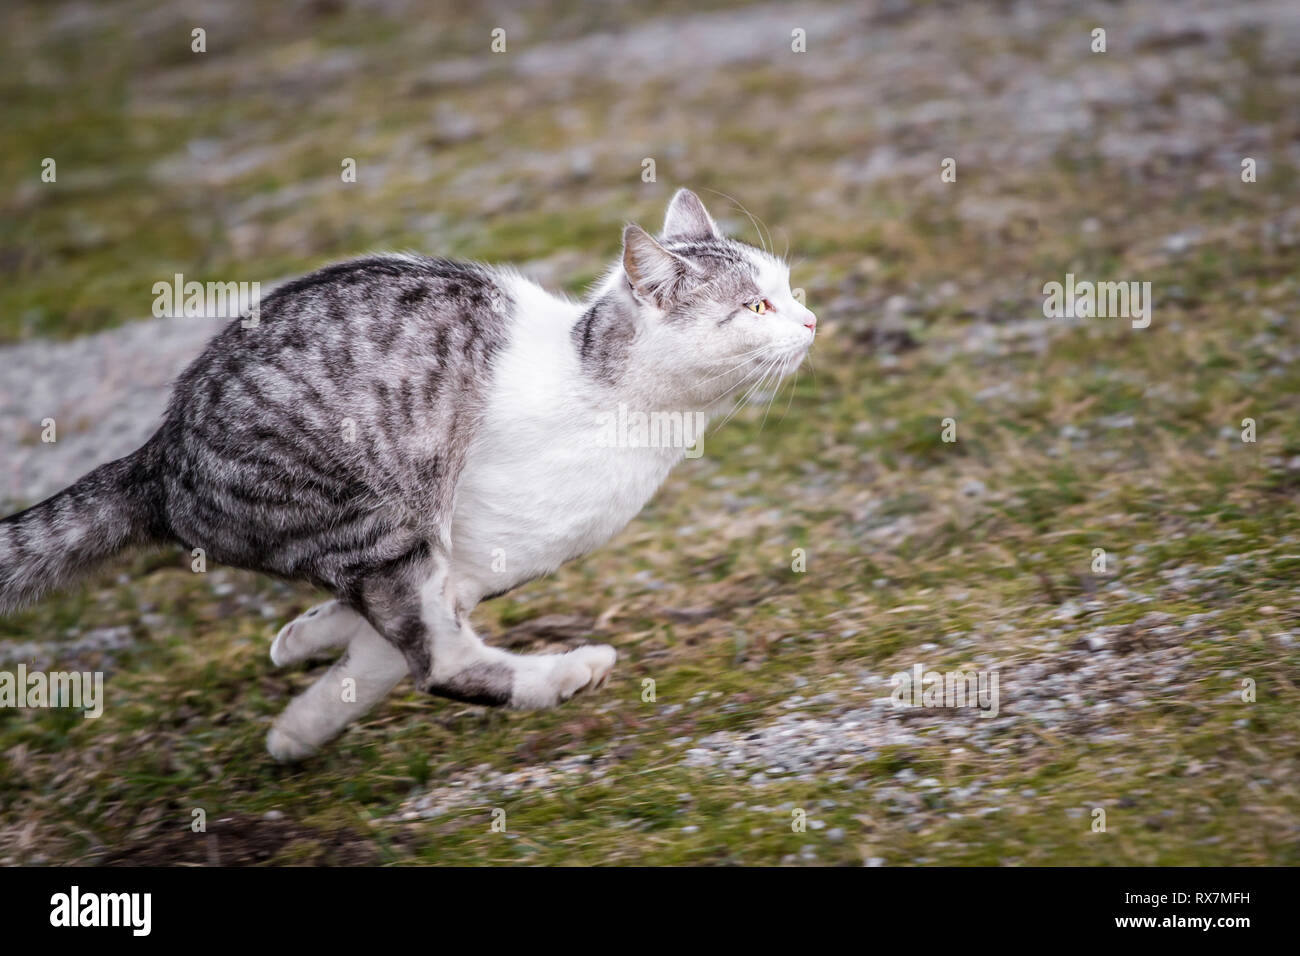 Getigerte Katze Stockfotos und -bilder Kaufen - Alamy